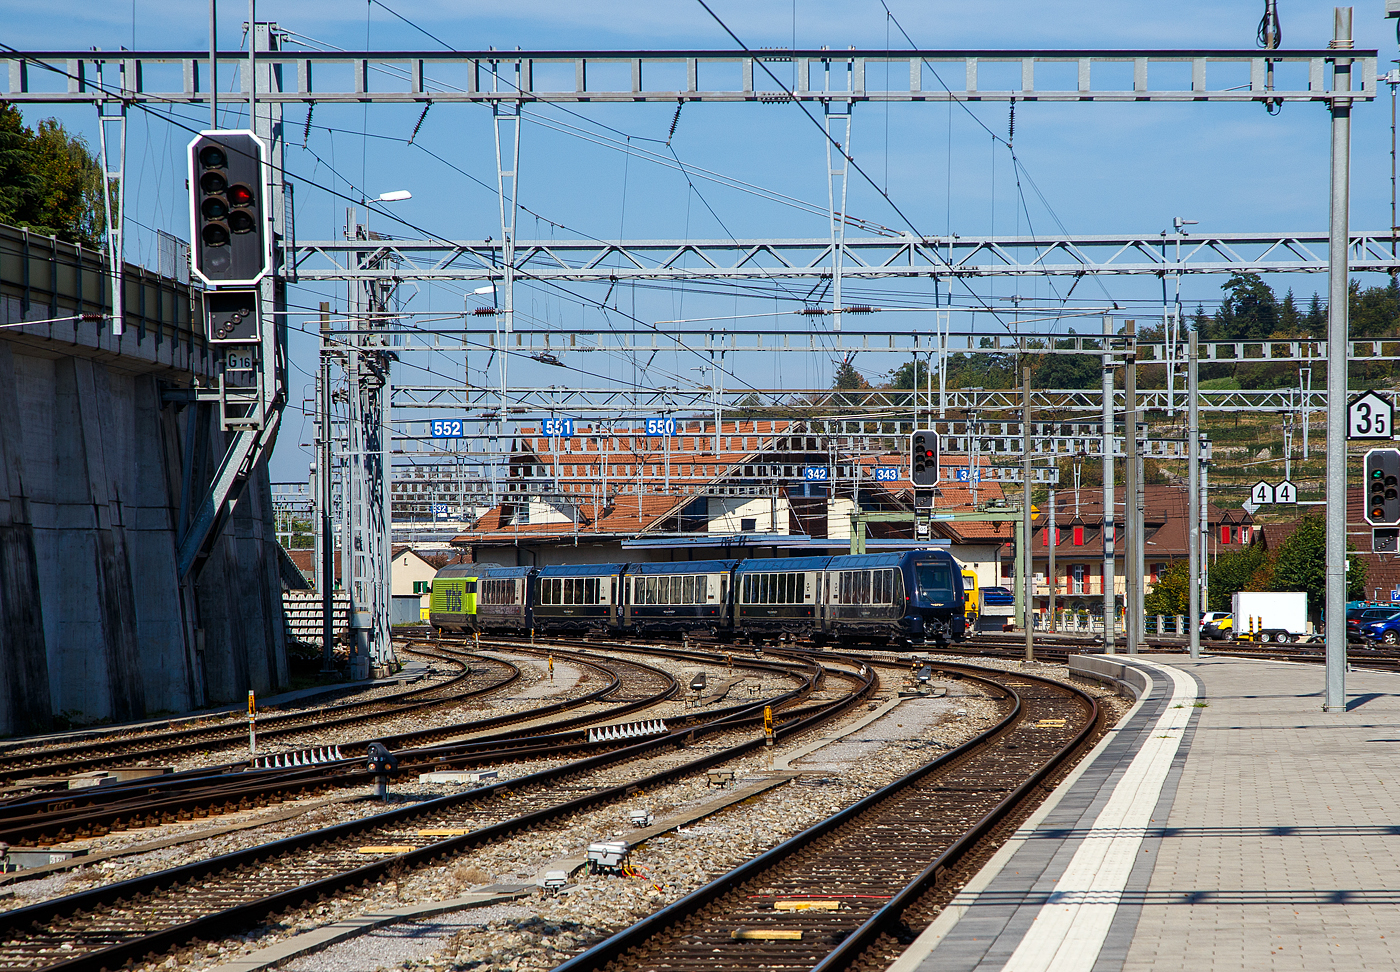 Die BLS Re 465 012 (91 85 4 465 012-3 CH-BLS) verlässt am 11 September 2023, mit dem GoldenPass Express (GPX) von Interlaken Ost via Zweisimmen nach Montreux, den Bahnhof Spiez.

Noch sind es hier, mit dem Interfacewagen (Bsi) direkt hinter der BLS Re 465 012, fünf Wagen. Für 2023/24 sind im MOB GoldenPass Express (GPX) noch ein 2. Klasse Niederflurwagen (BsNF 271 – 274) eingeplant, die wohl noch nicht geliefert wurden.
